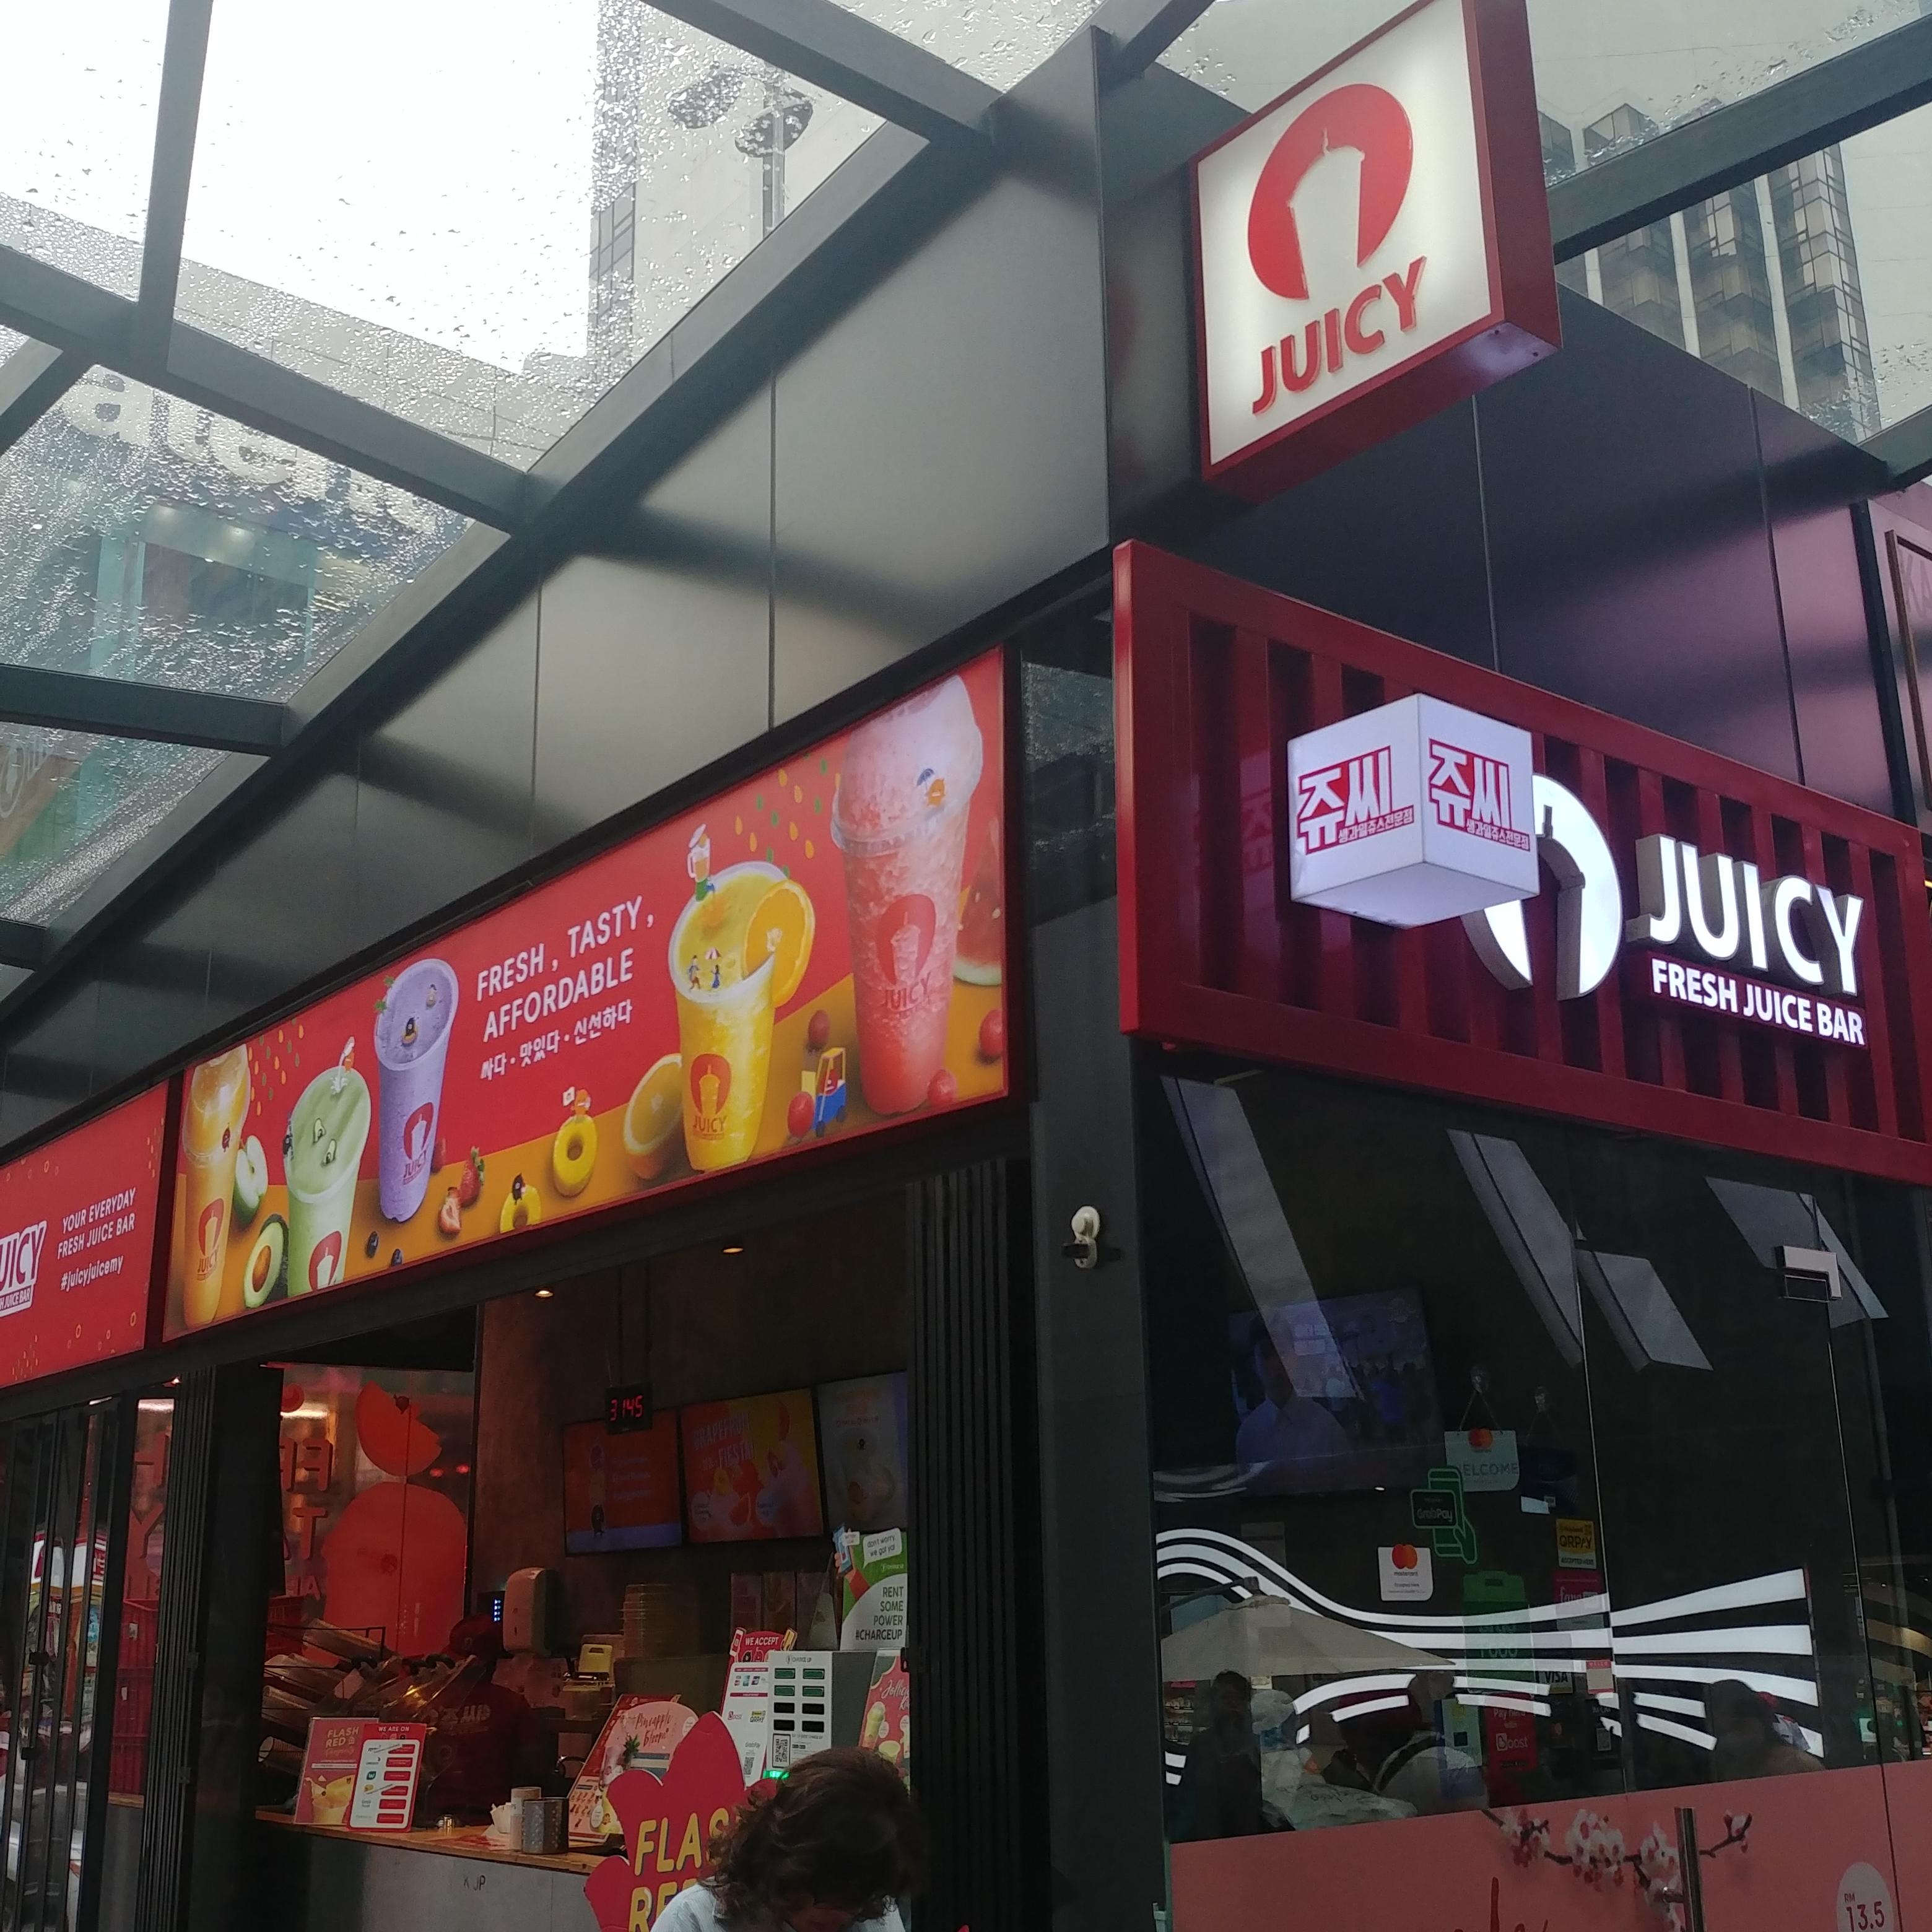 쿠알라룸푸르 여행 쇼핑의 거리 부킷 빈탕 Bukit Bintang